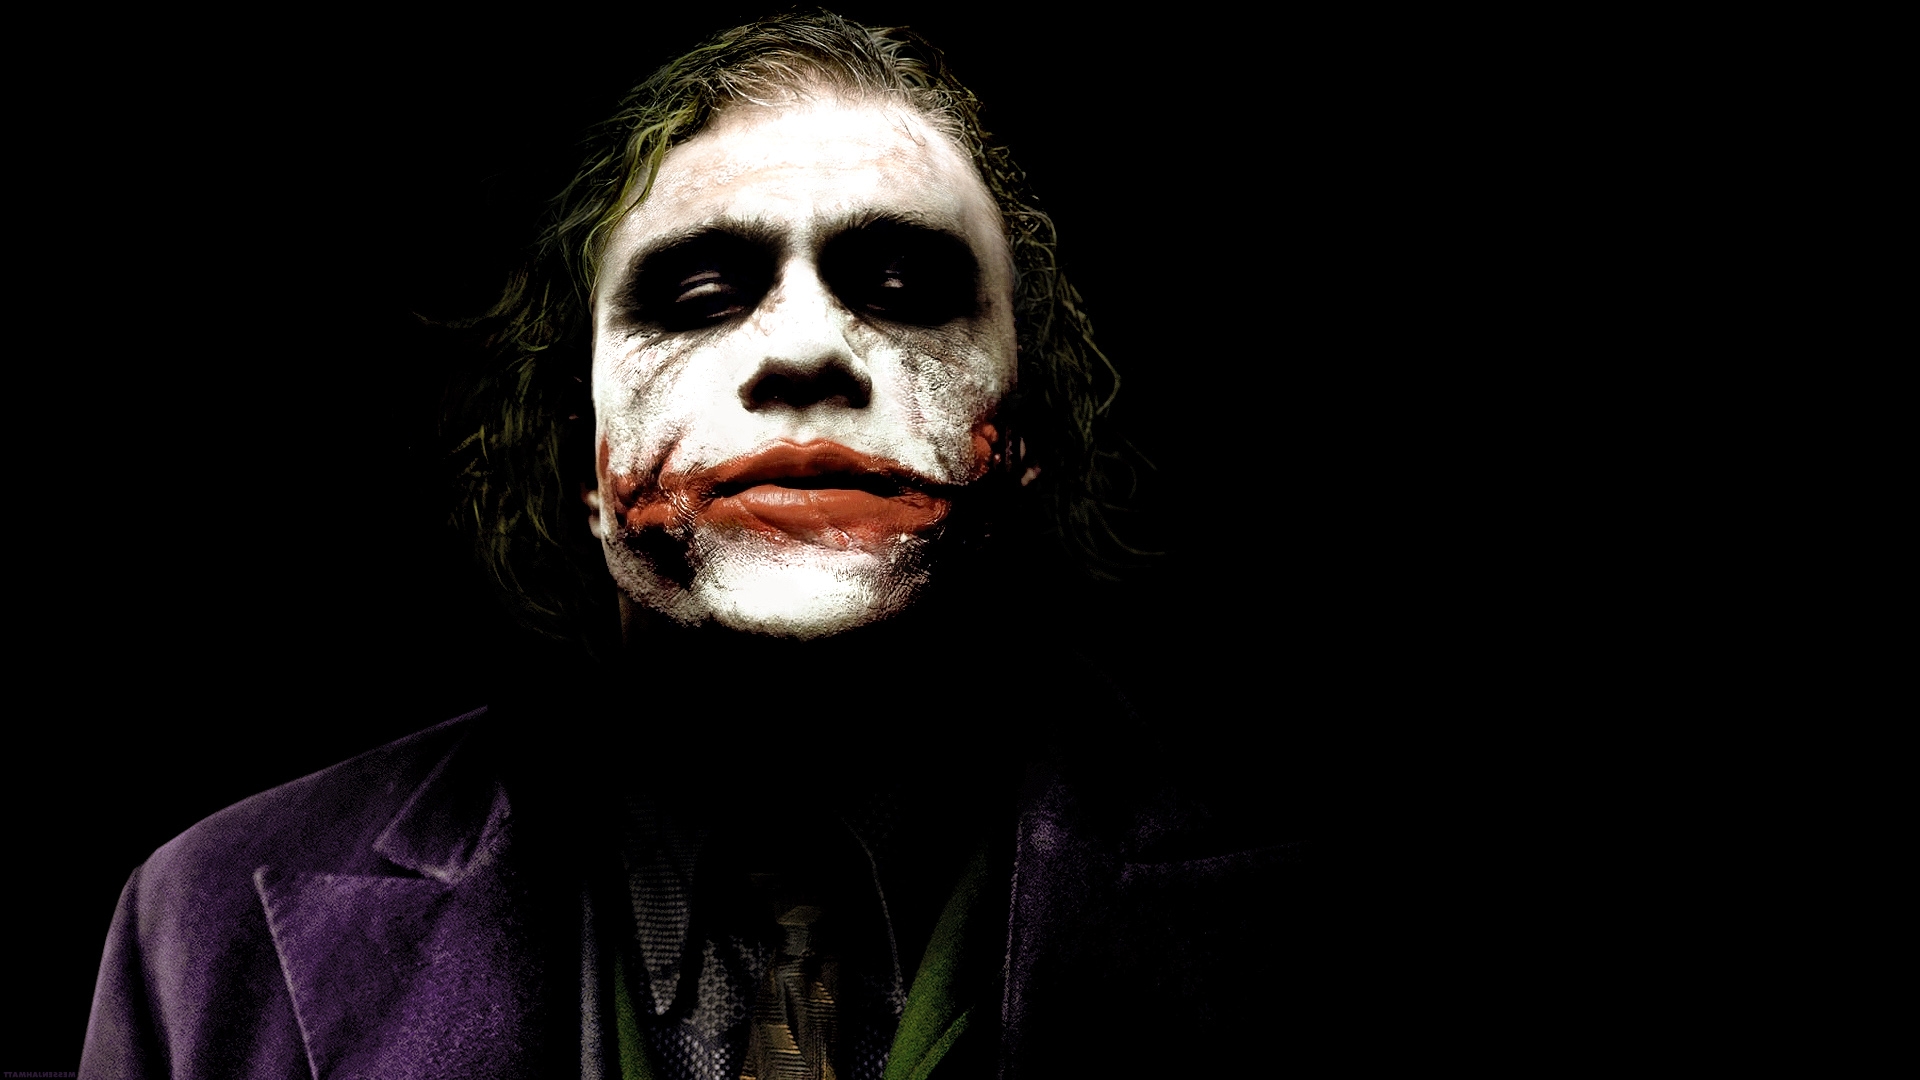 HD Wallpaper Of Joker The Dark Knight Movie